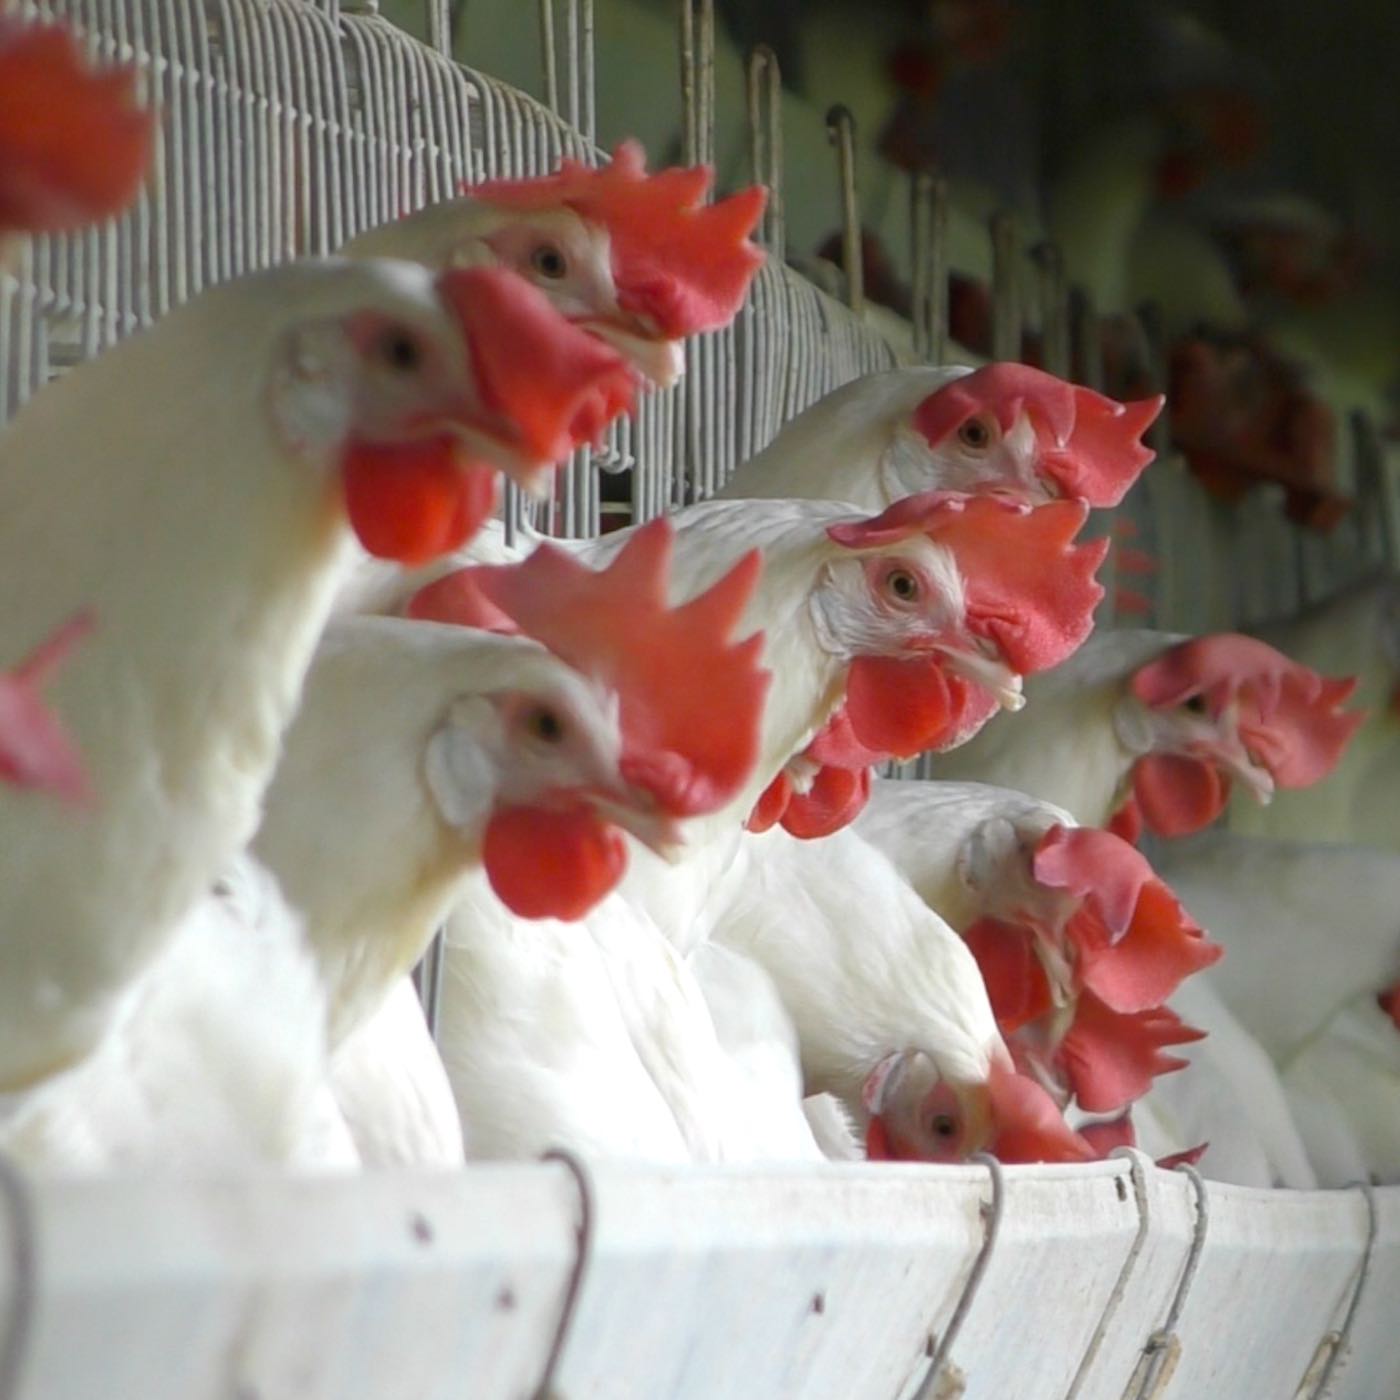 Gallinas hacinadas en jaulas en la industria del huevo